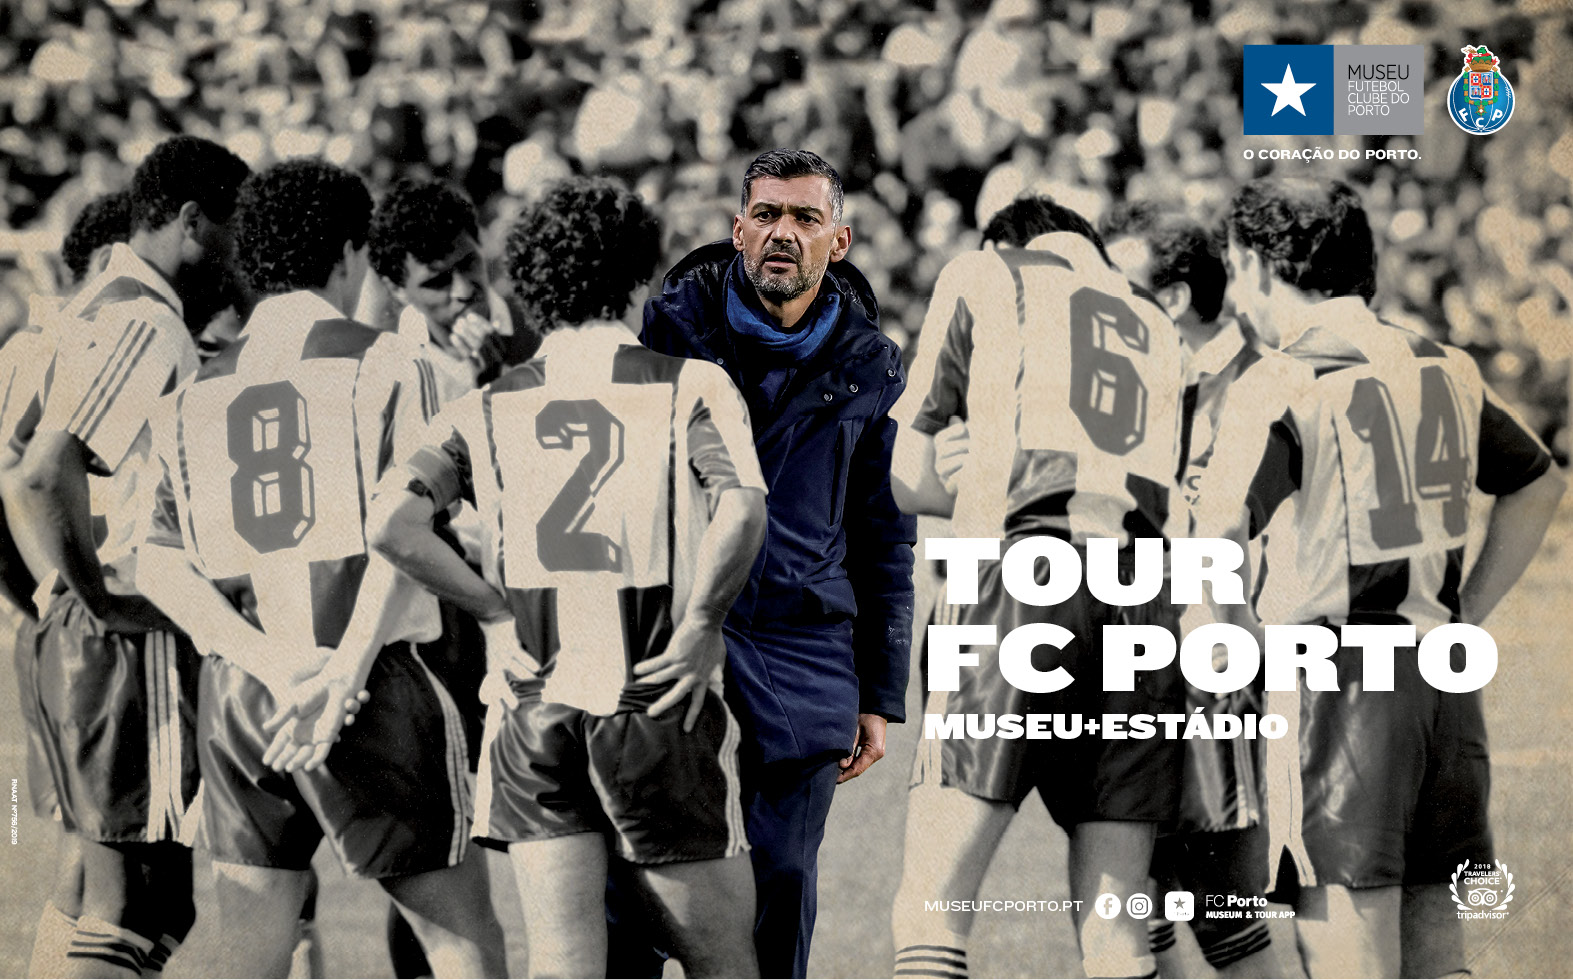 TOUR FC PORTO - MUSEU E ESTÁDIO